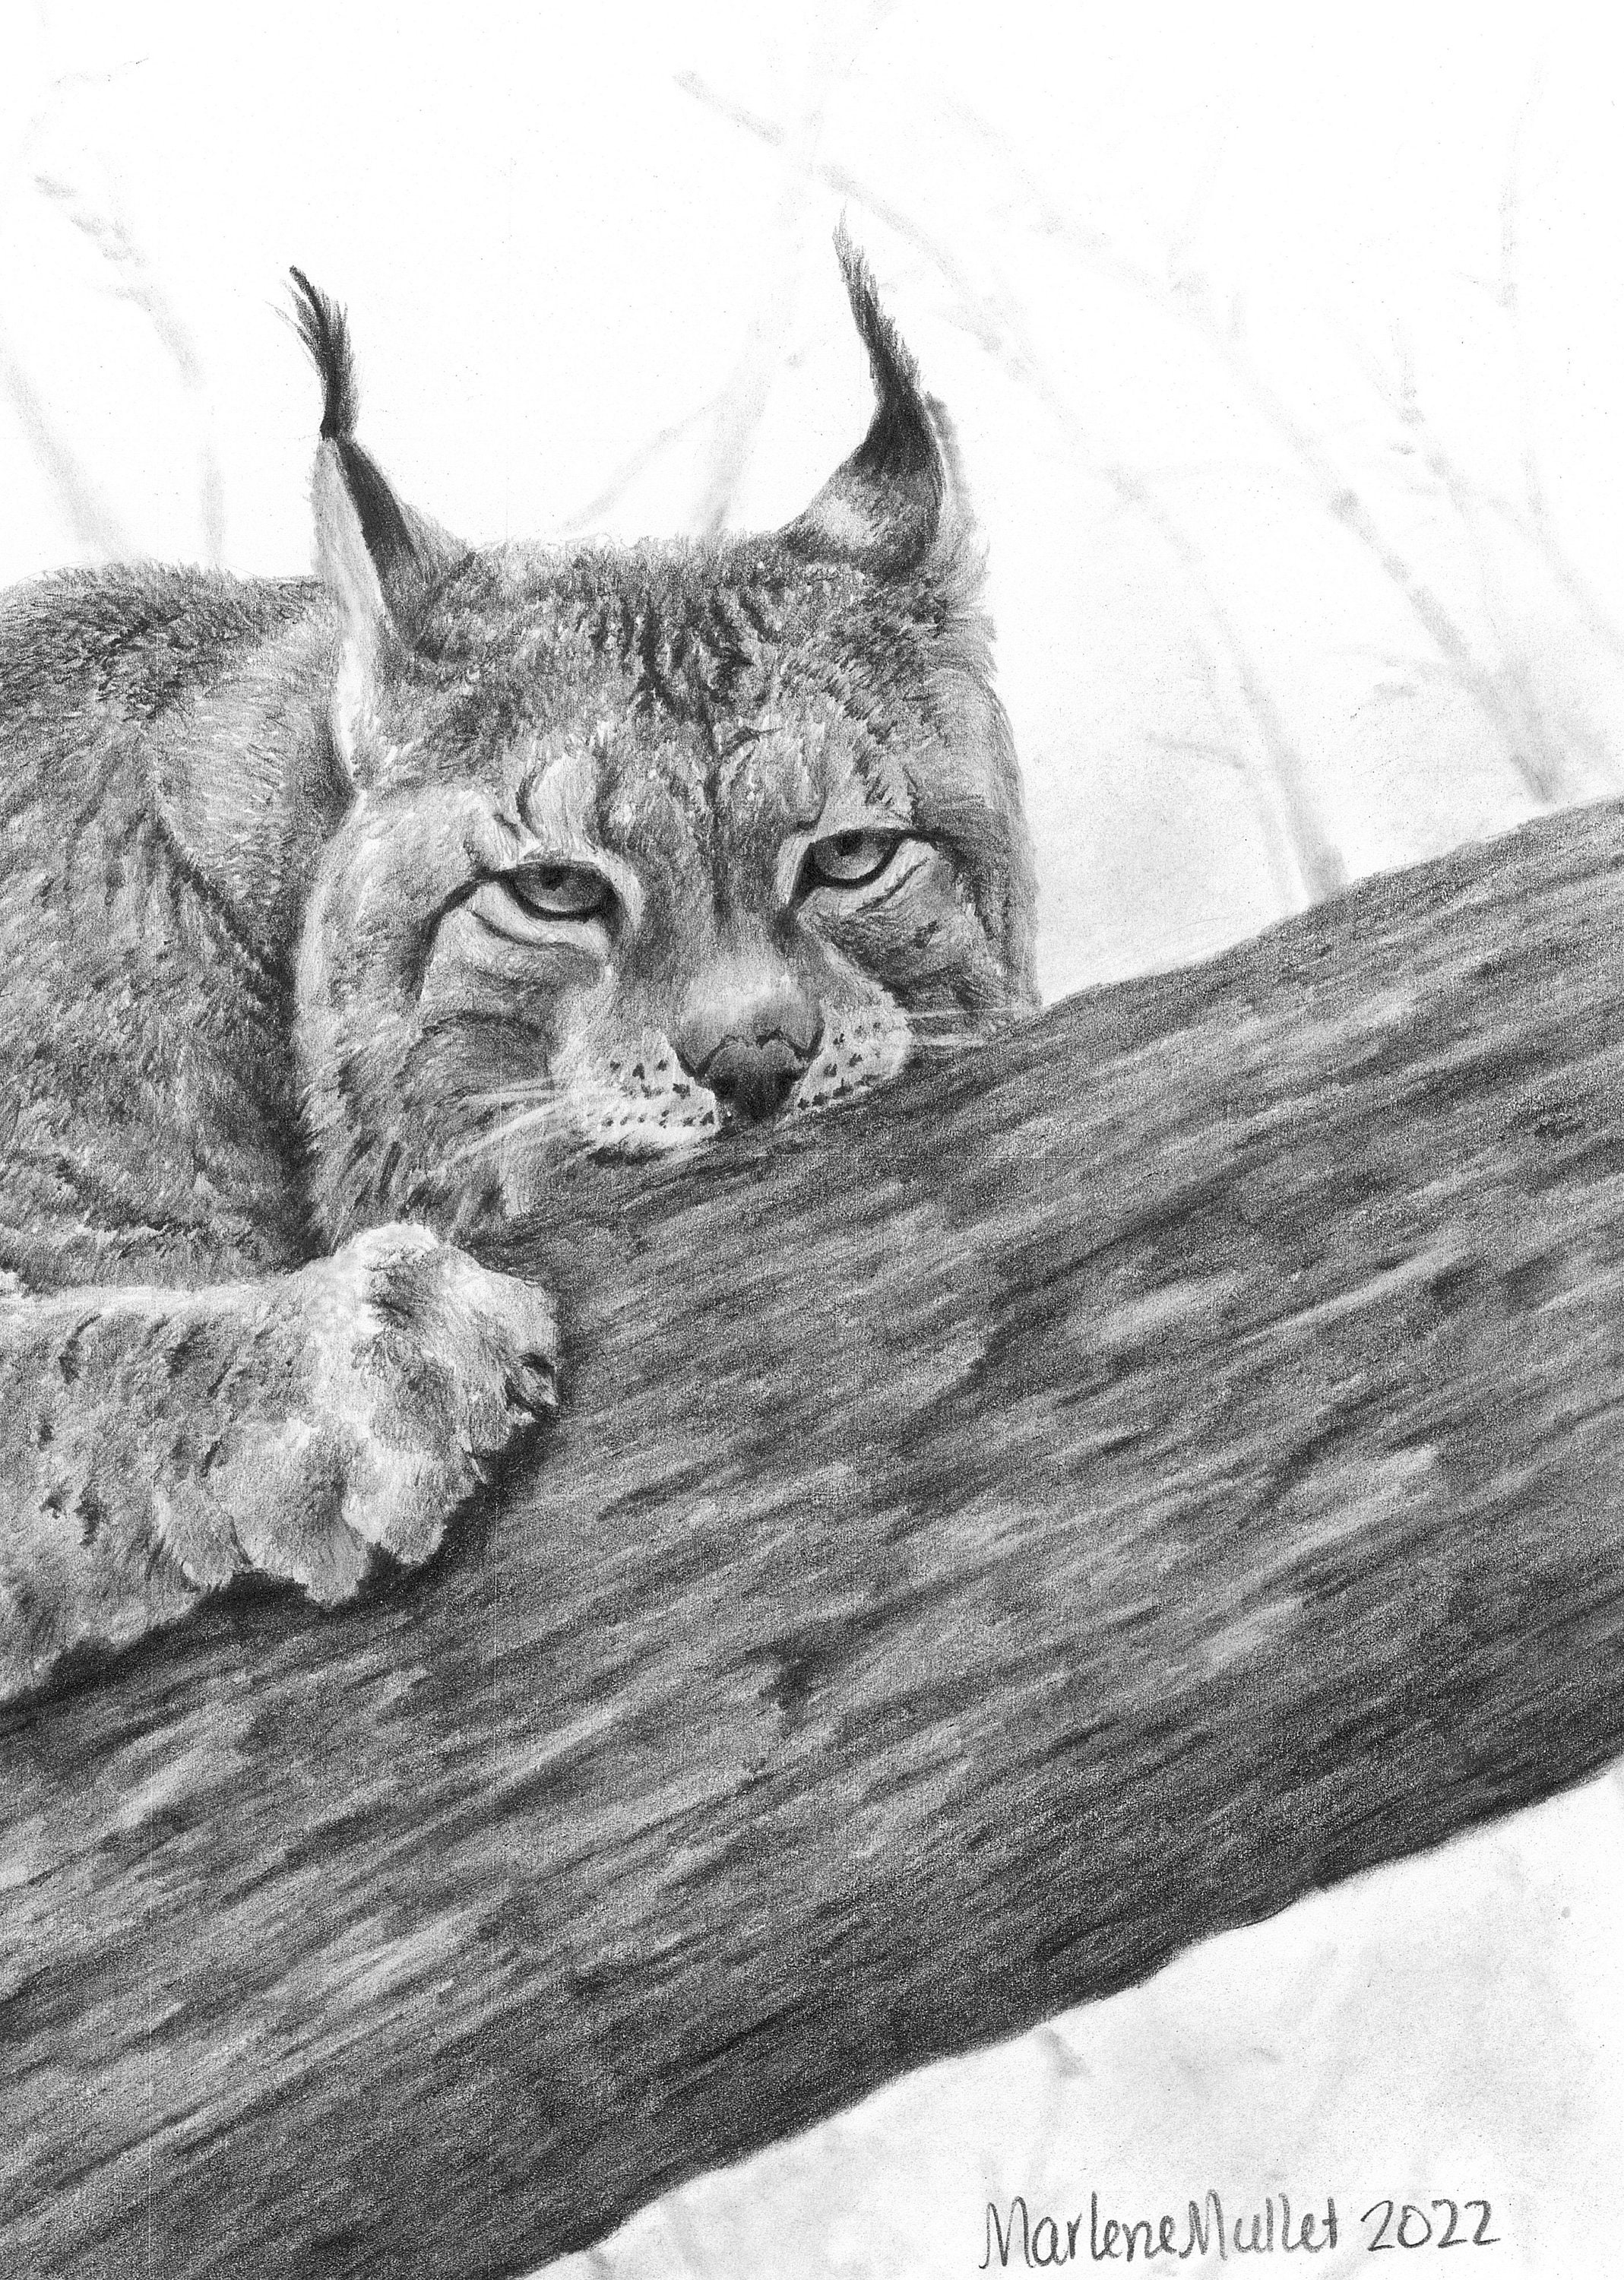 Impression rigide for Sale avec l'œuvre « Dessin au crayon noir et blanc  d'un lynx » de l'artiste Pencil-Art